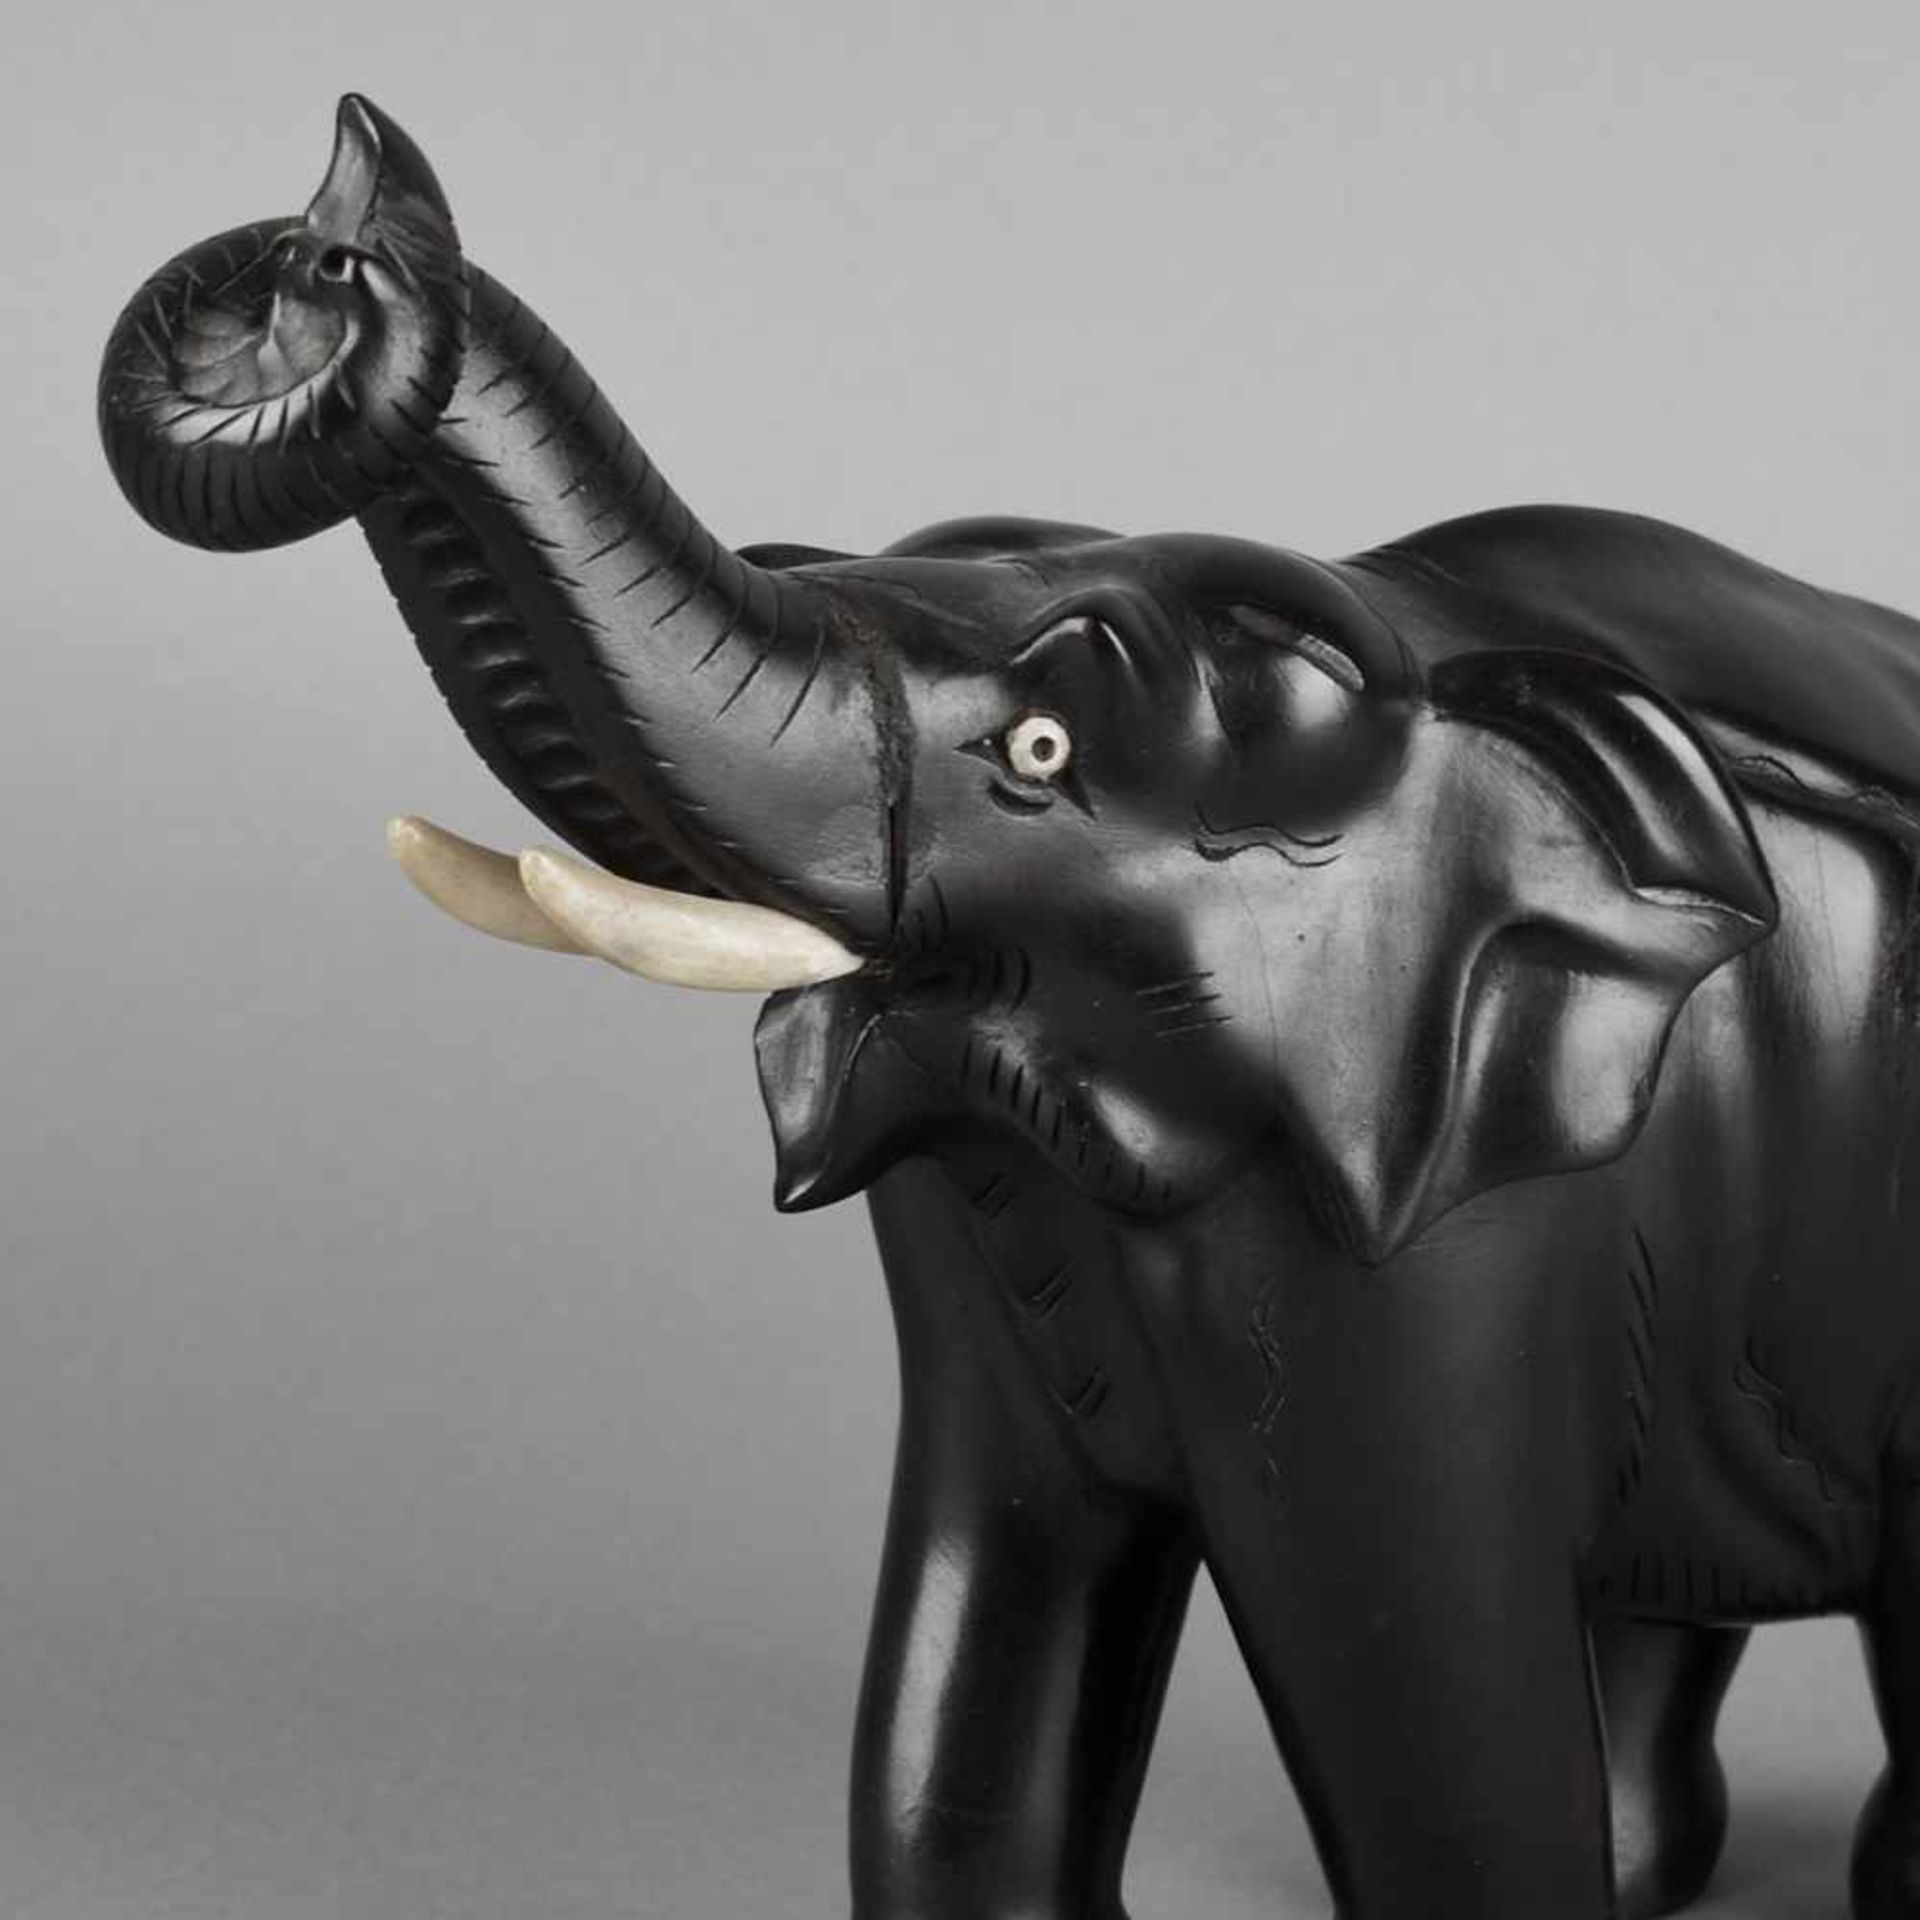 Elefantenfigur Tropenholz, geschnitzt und schwarz bemalt, schreitender Elefant mit erhobenem Rüssel,